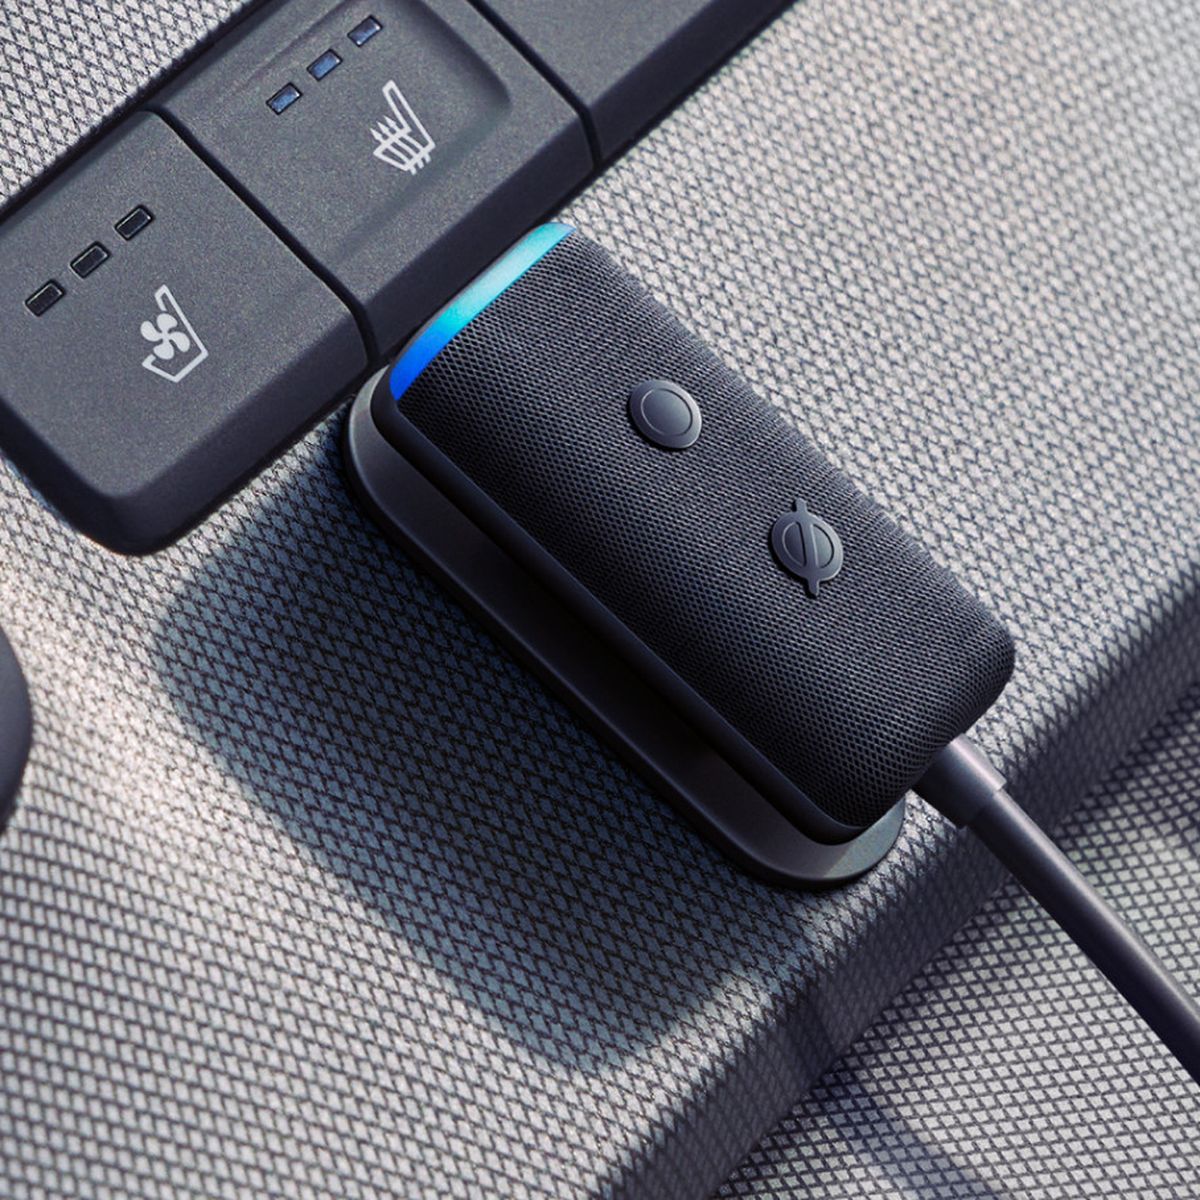 Este Echo Dot es un superventas y te permite controlar tus